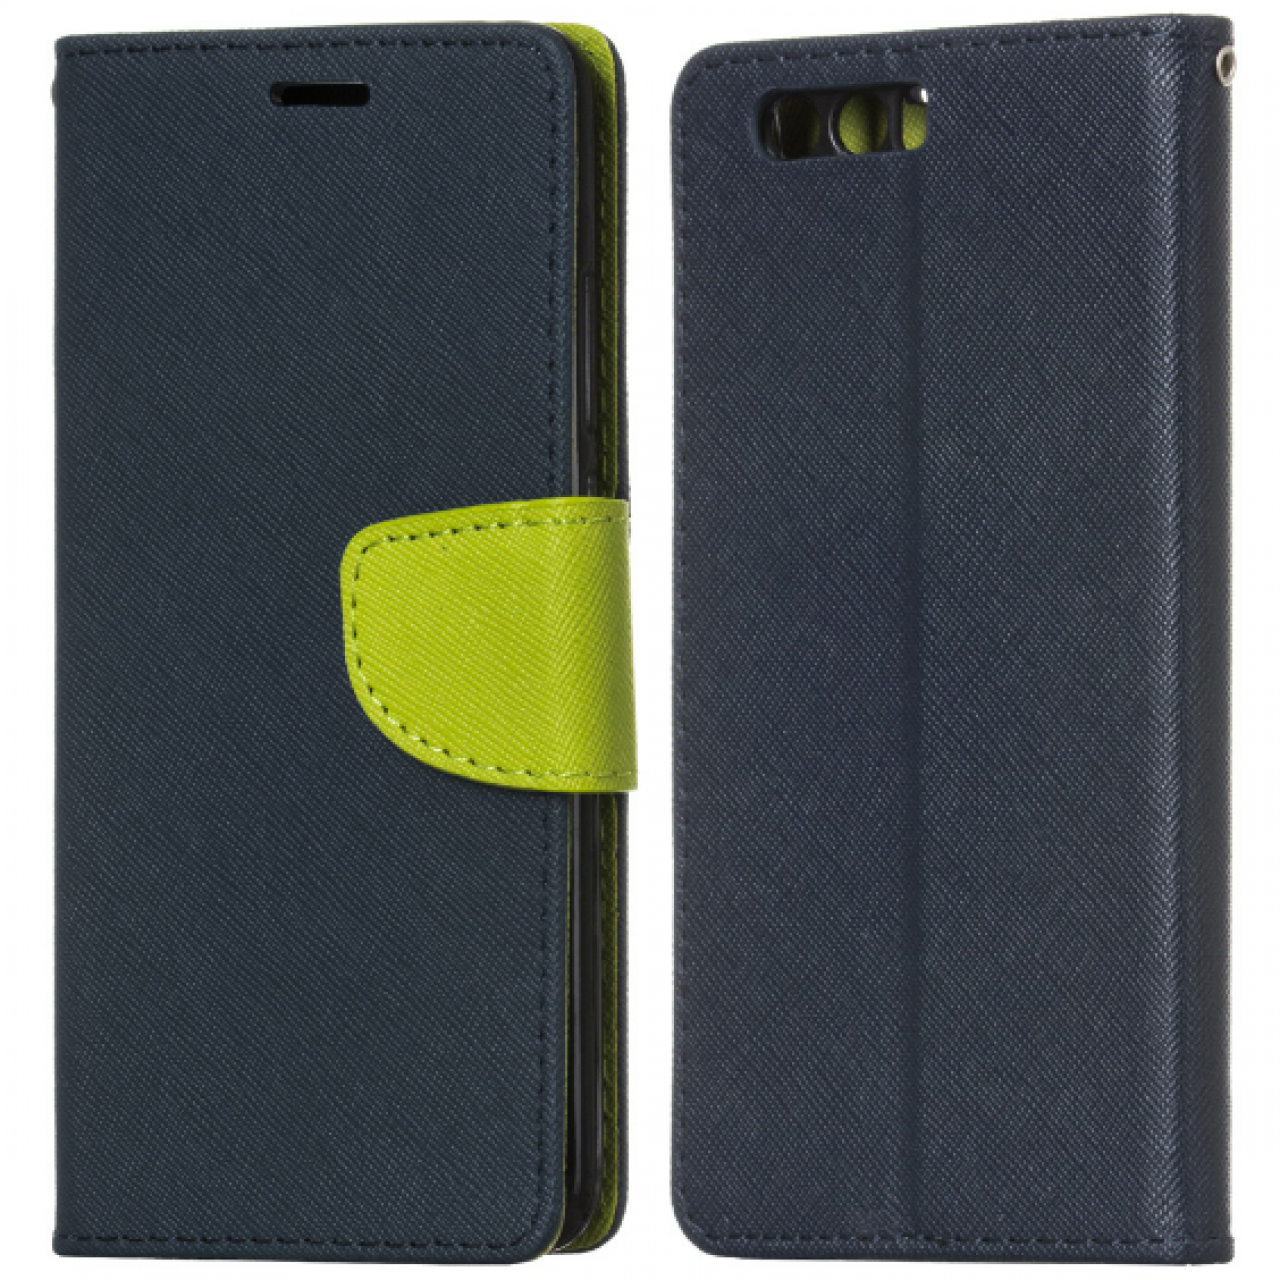 Θήκη Huawei Honor 9 PU Leather Πορτοφόλι flip Fancy Diary - 3800 - Μπλε - OEM